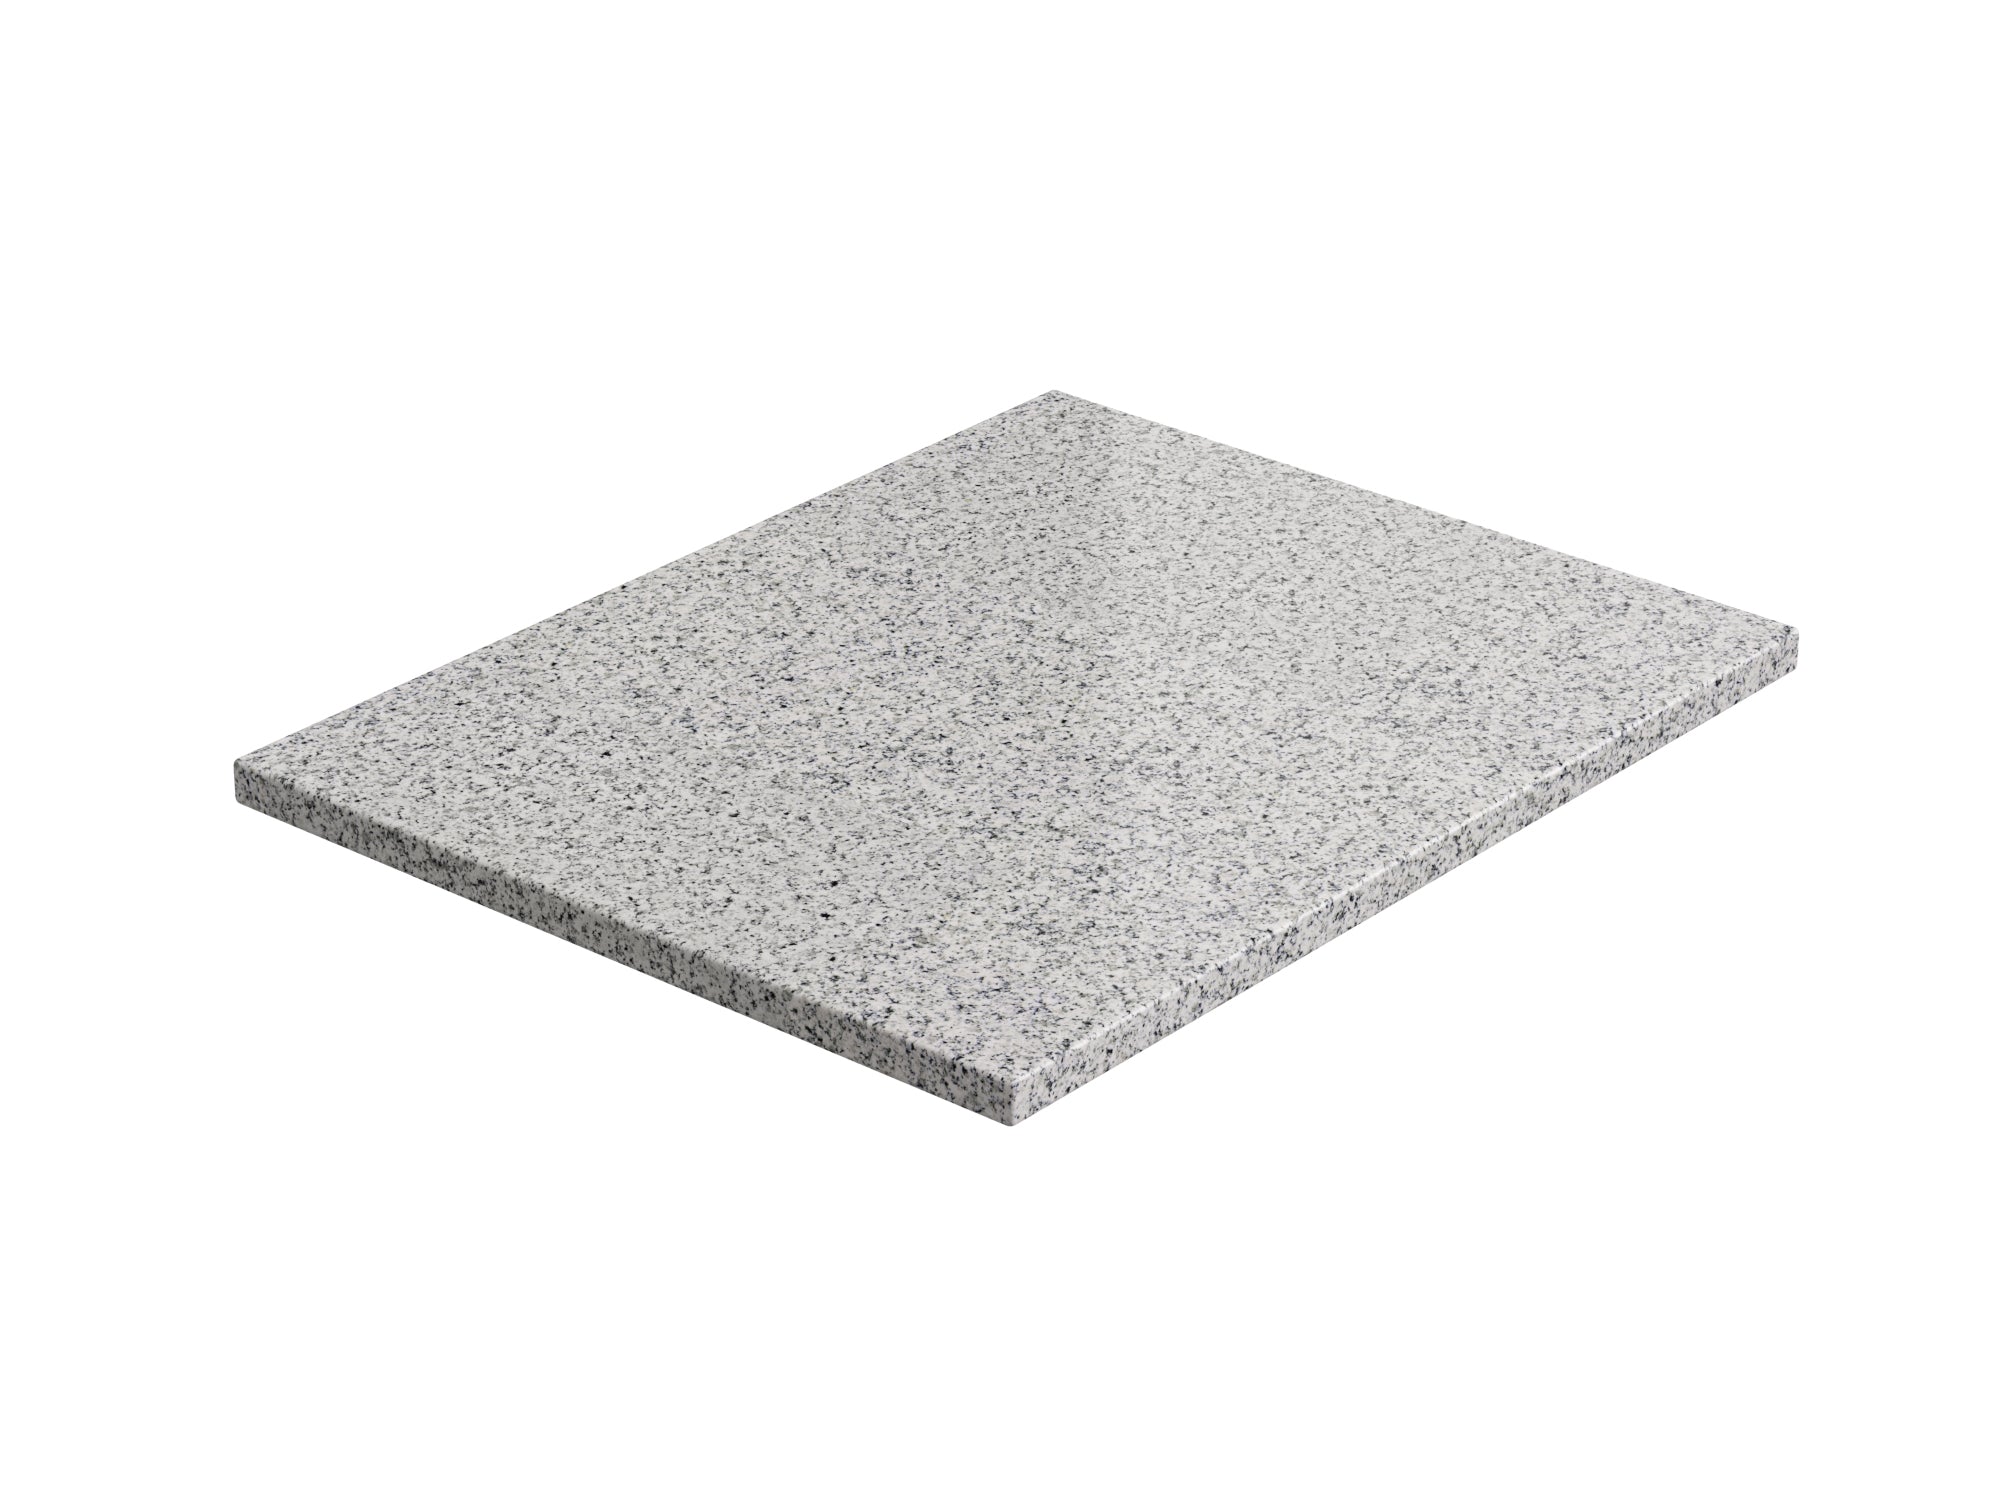 Outdoor Kitchen Granite Countertop Pack (3 x 32 in. Countertop, 1 x 56 in. Countertop)